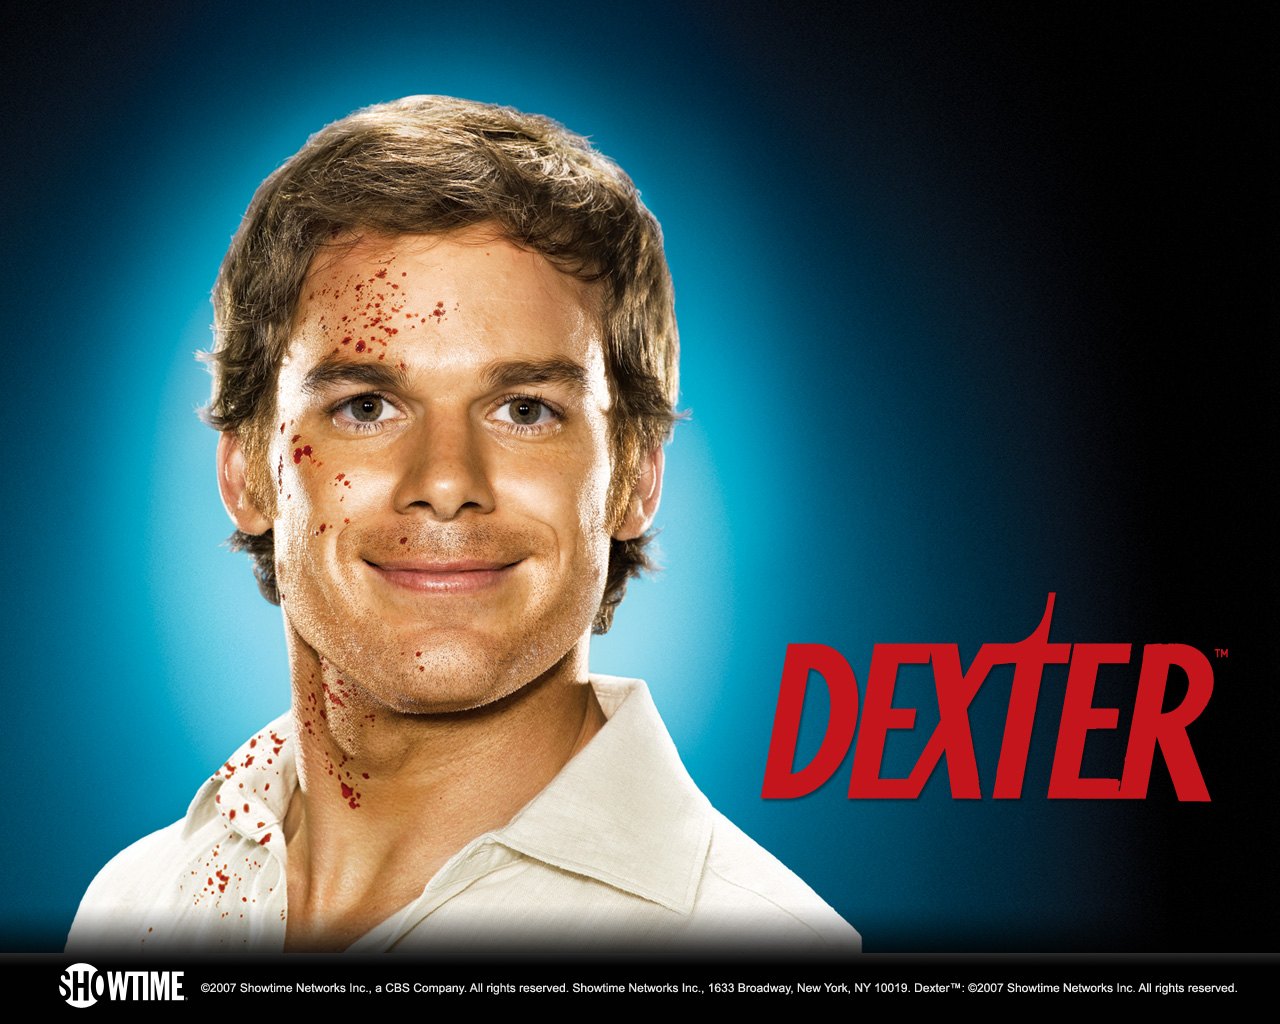 More Dexter Wallpaper In HD For Your Desktop